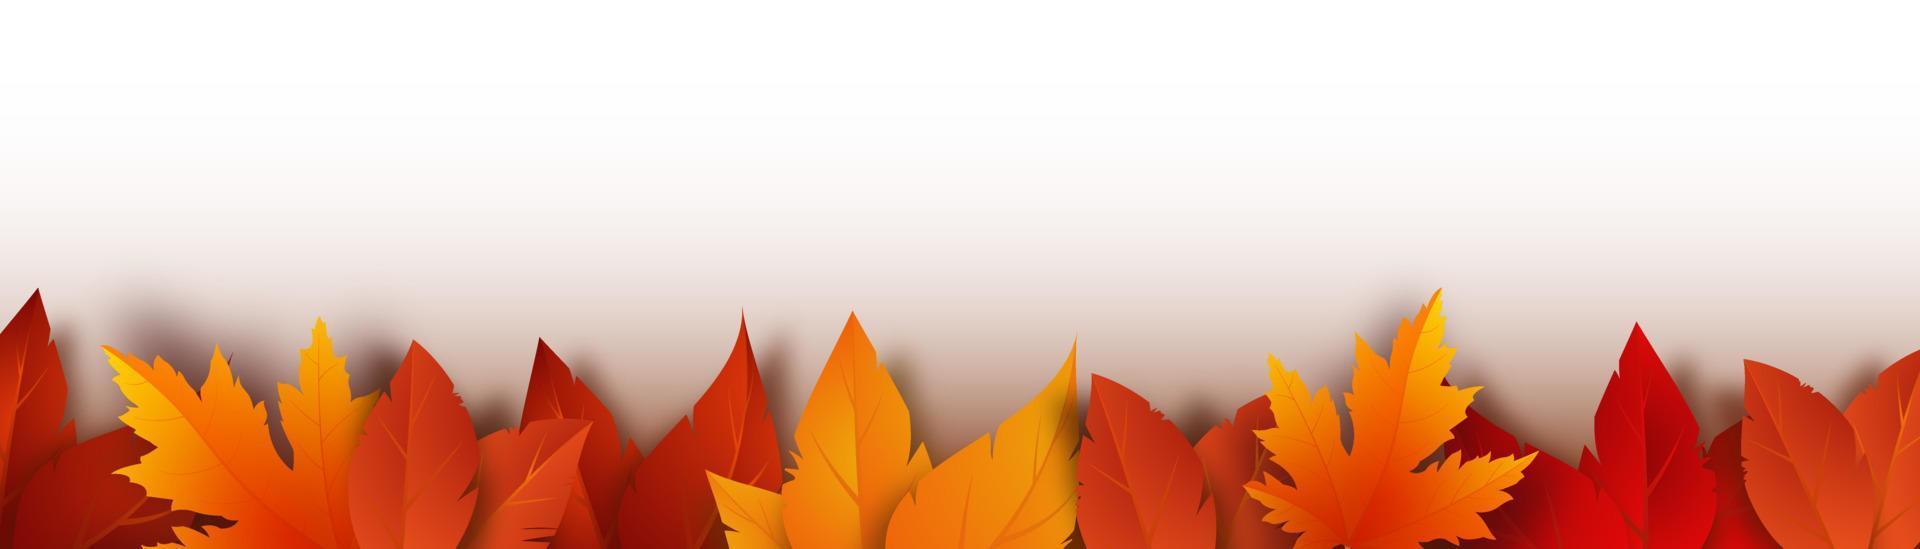 realistiska gula, röda, orange löv. höstens lövverk på en vit bakgrund. vektor illustration